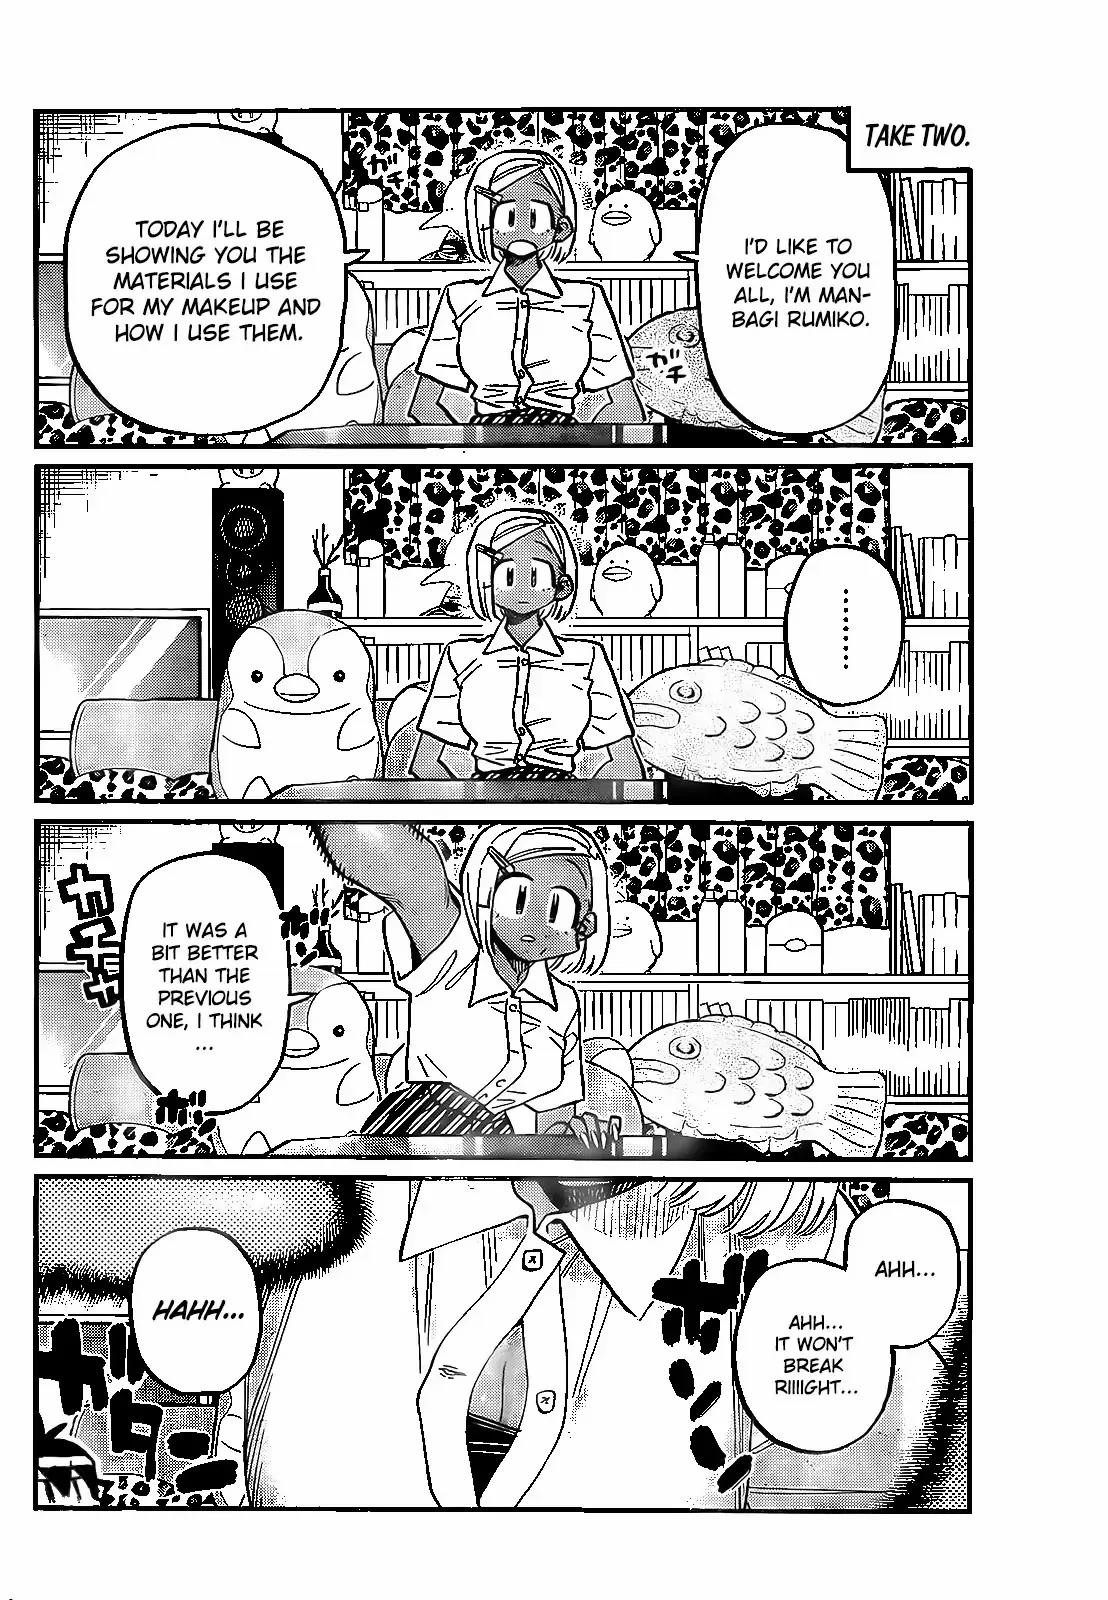 Read Manga KOMI-SAN WA KOMYUSHOU DESU - Chapter 413